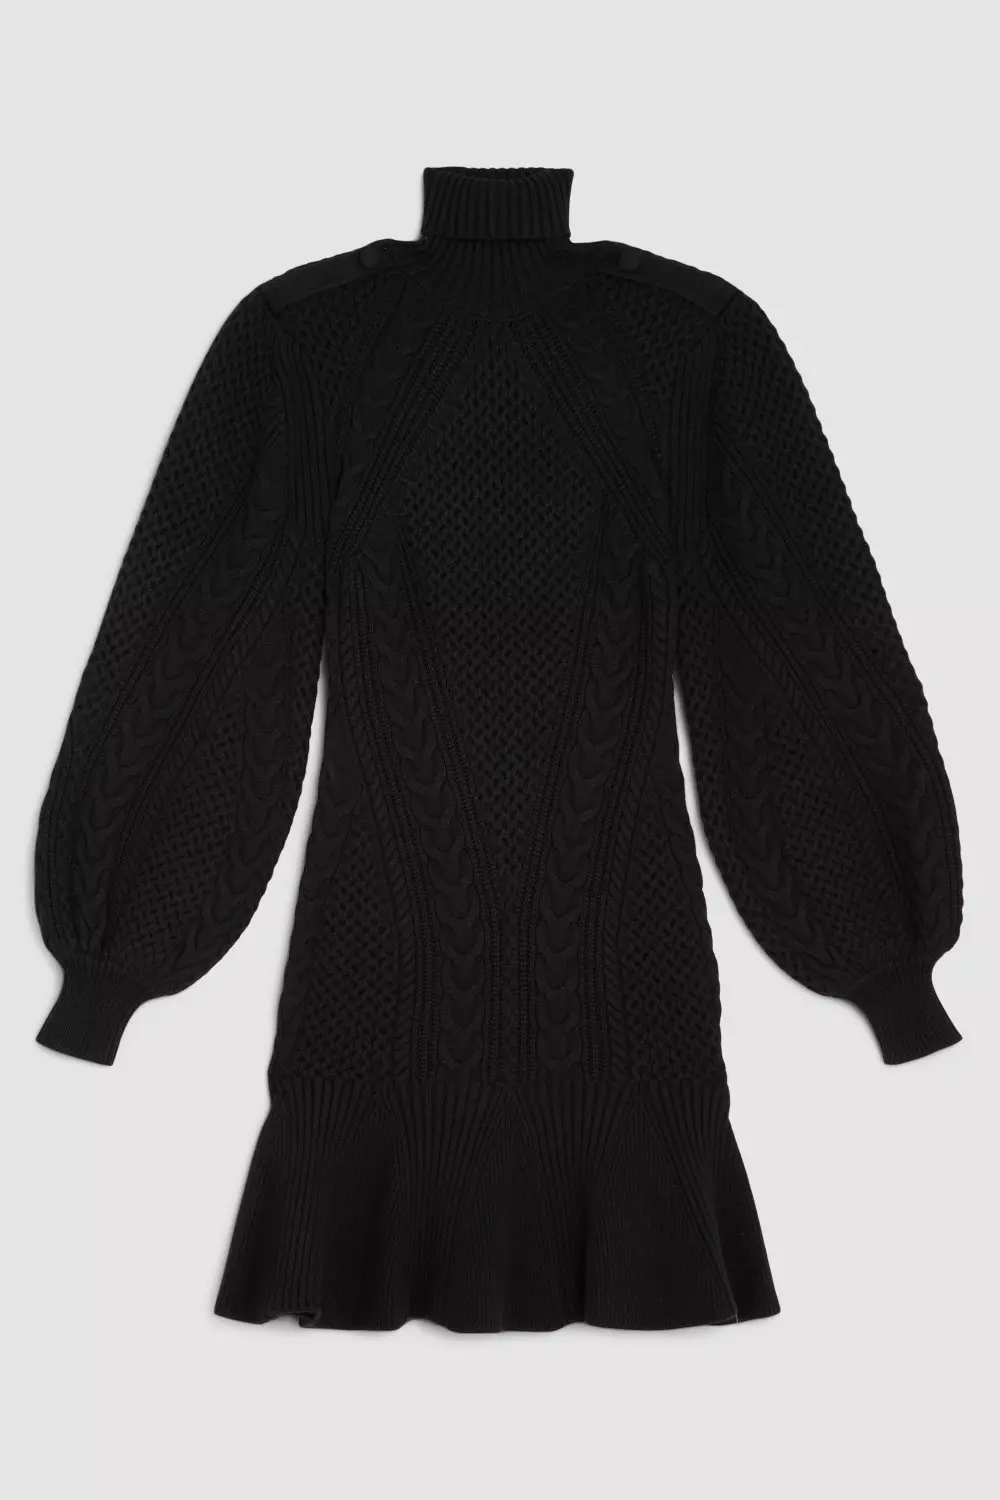 Velvet Kaden Knit Sweater Dress / Black - nineNORTH